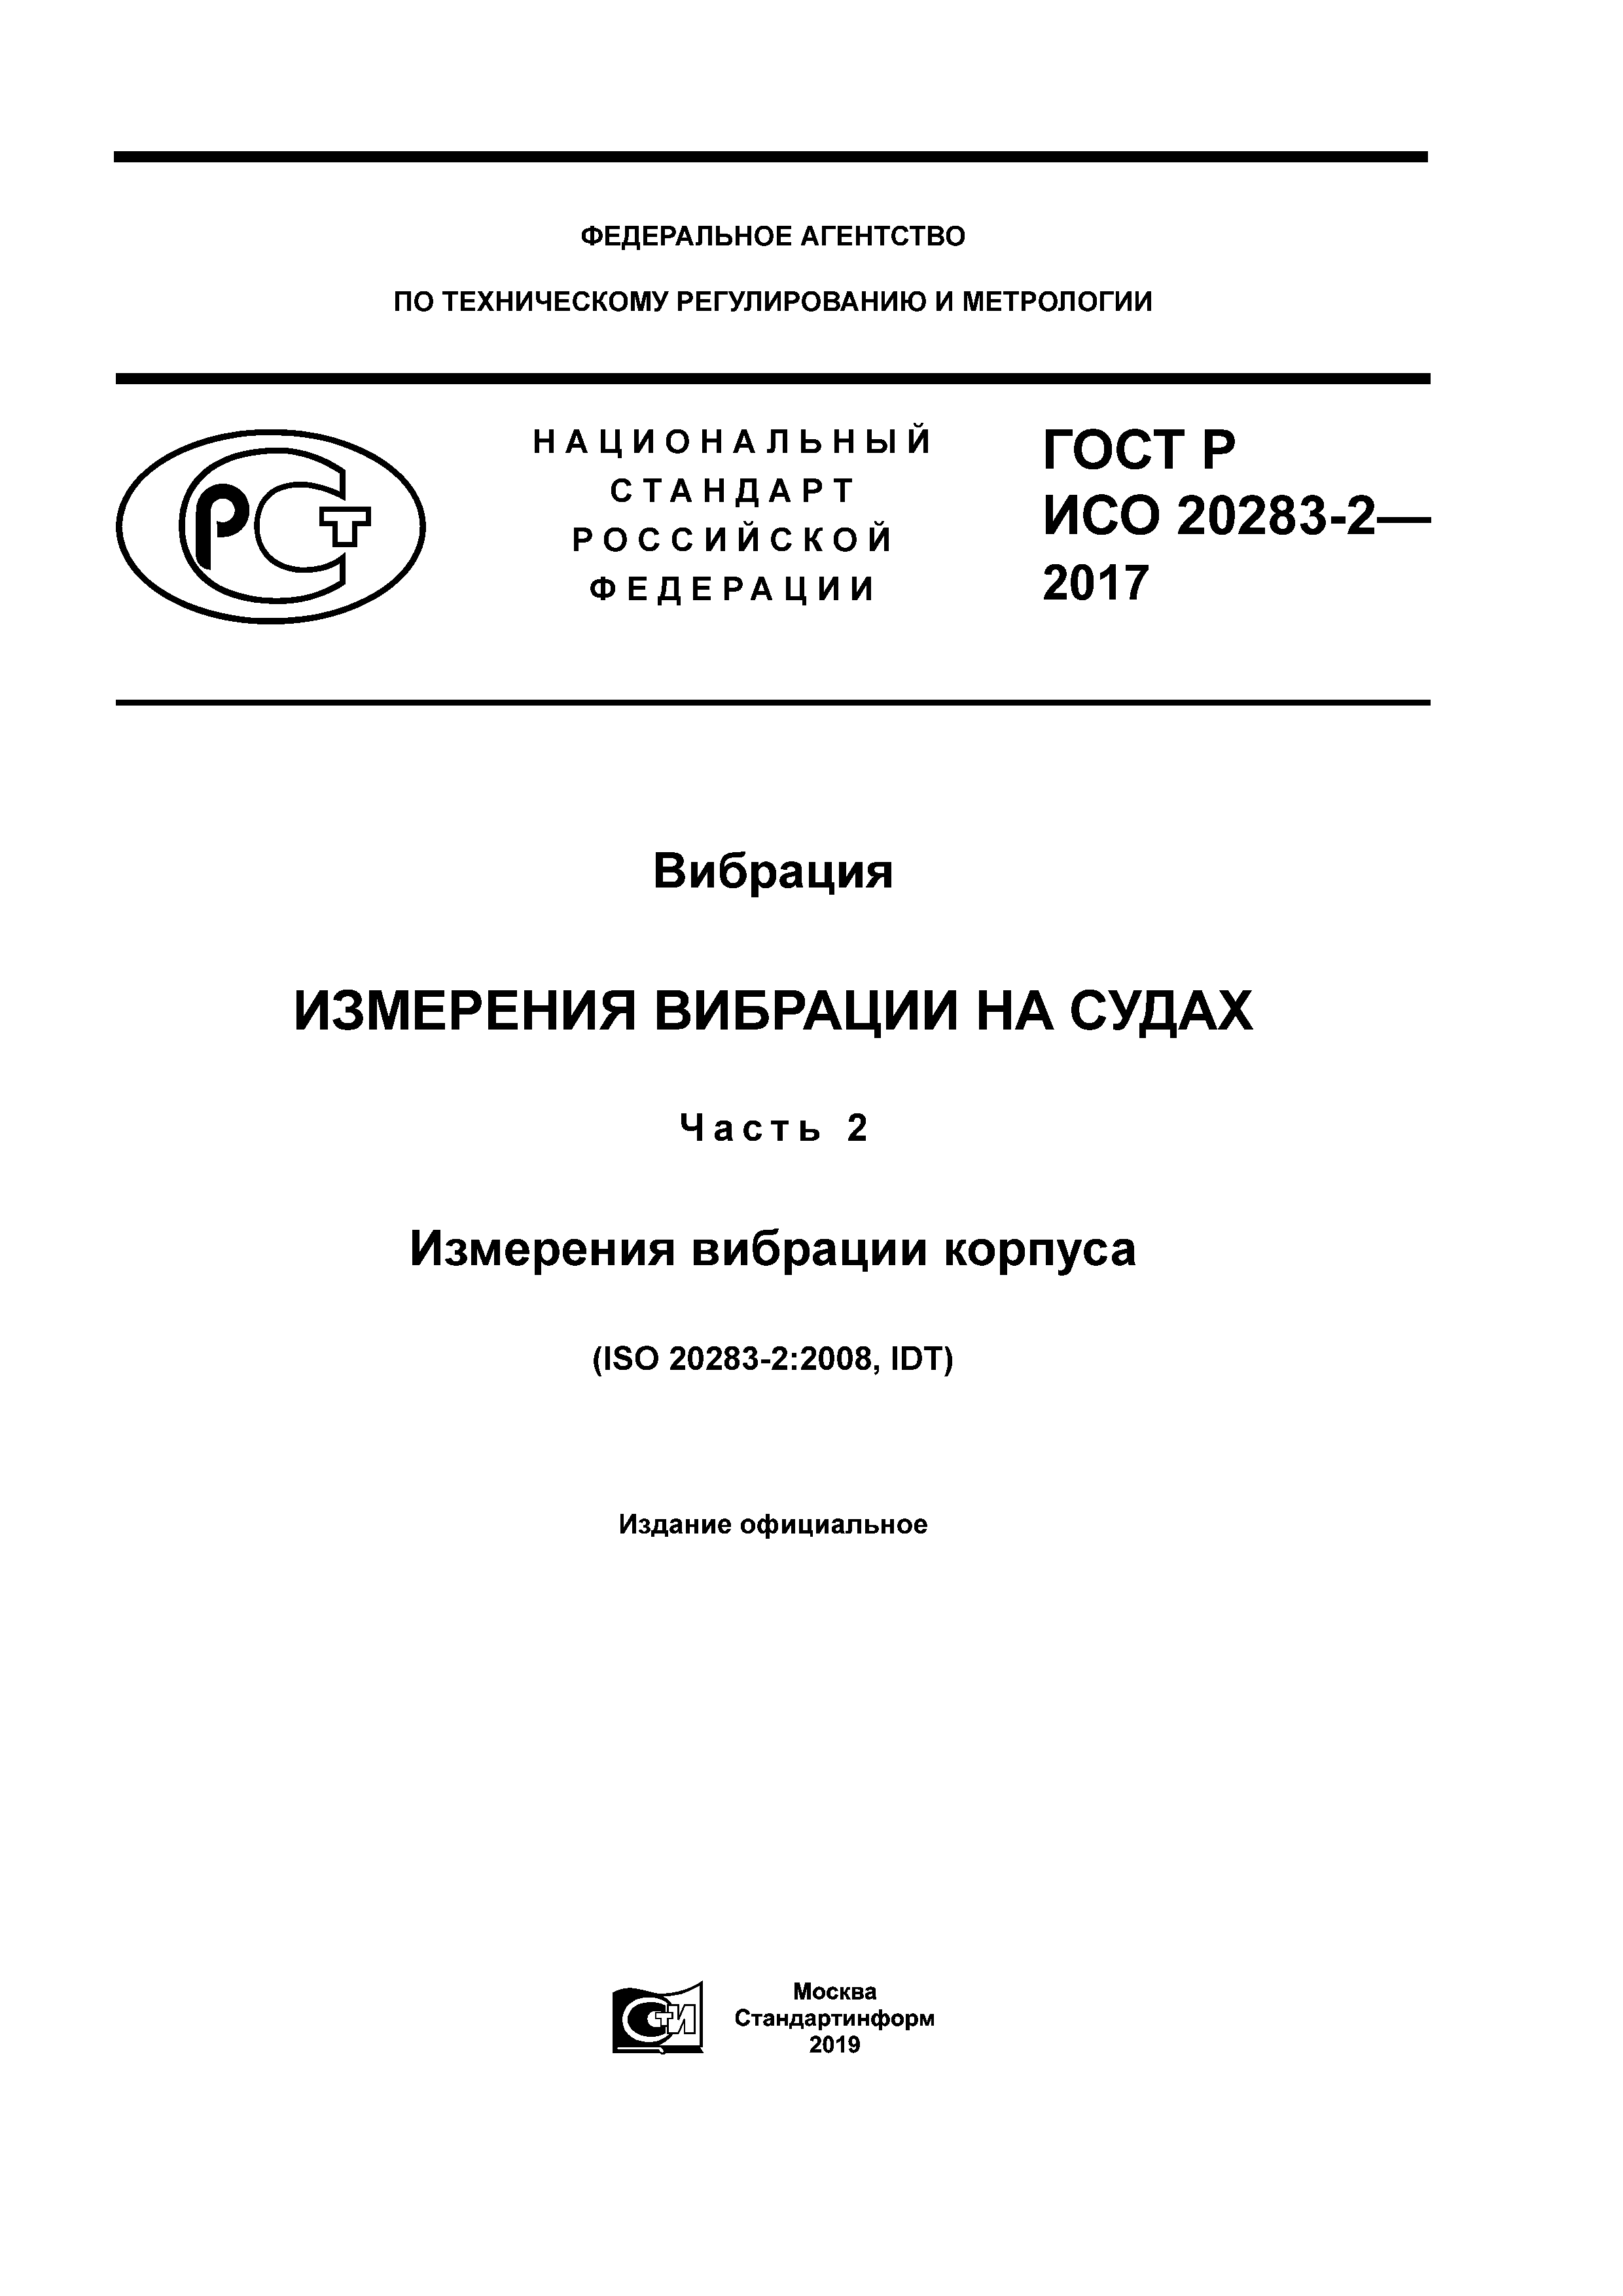 ГОСТ Р ИСО 20283-2-2017